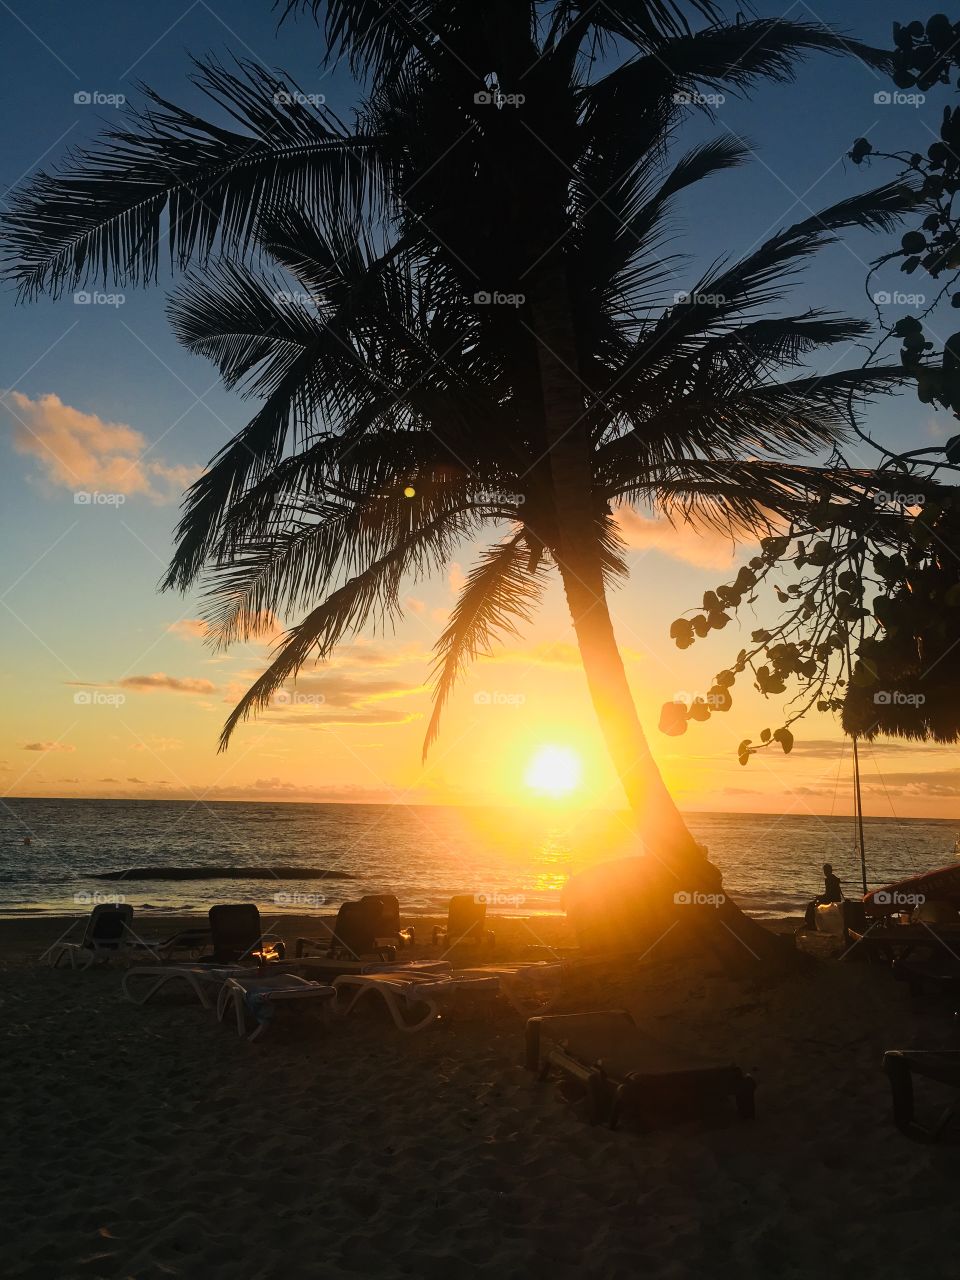 Sunrise in beautiful Punta Cana